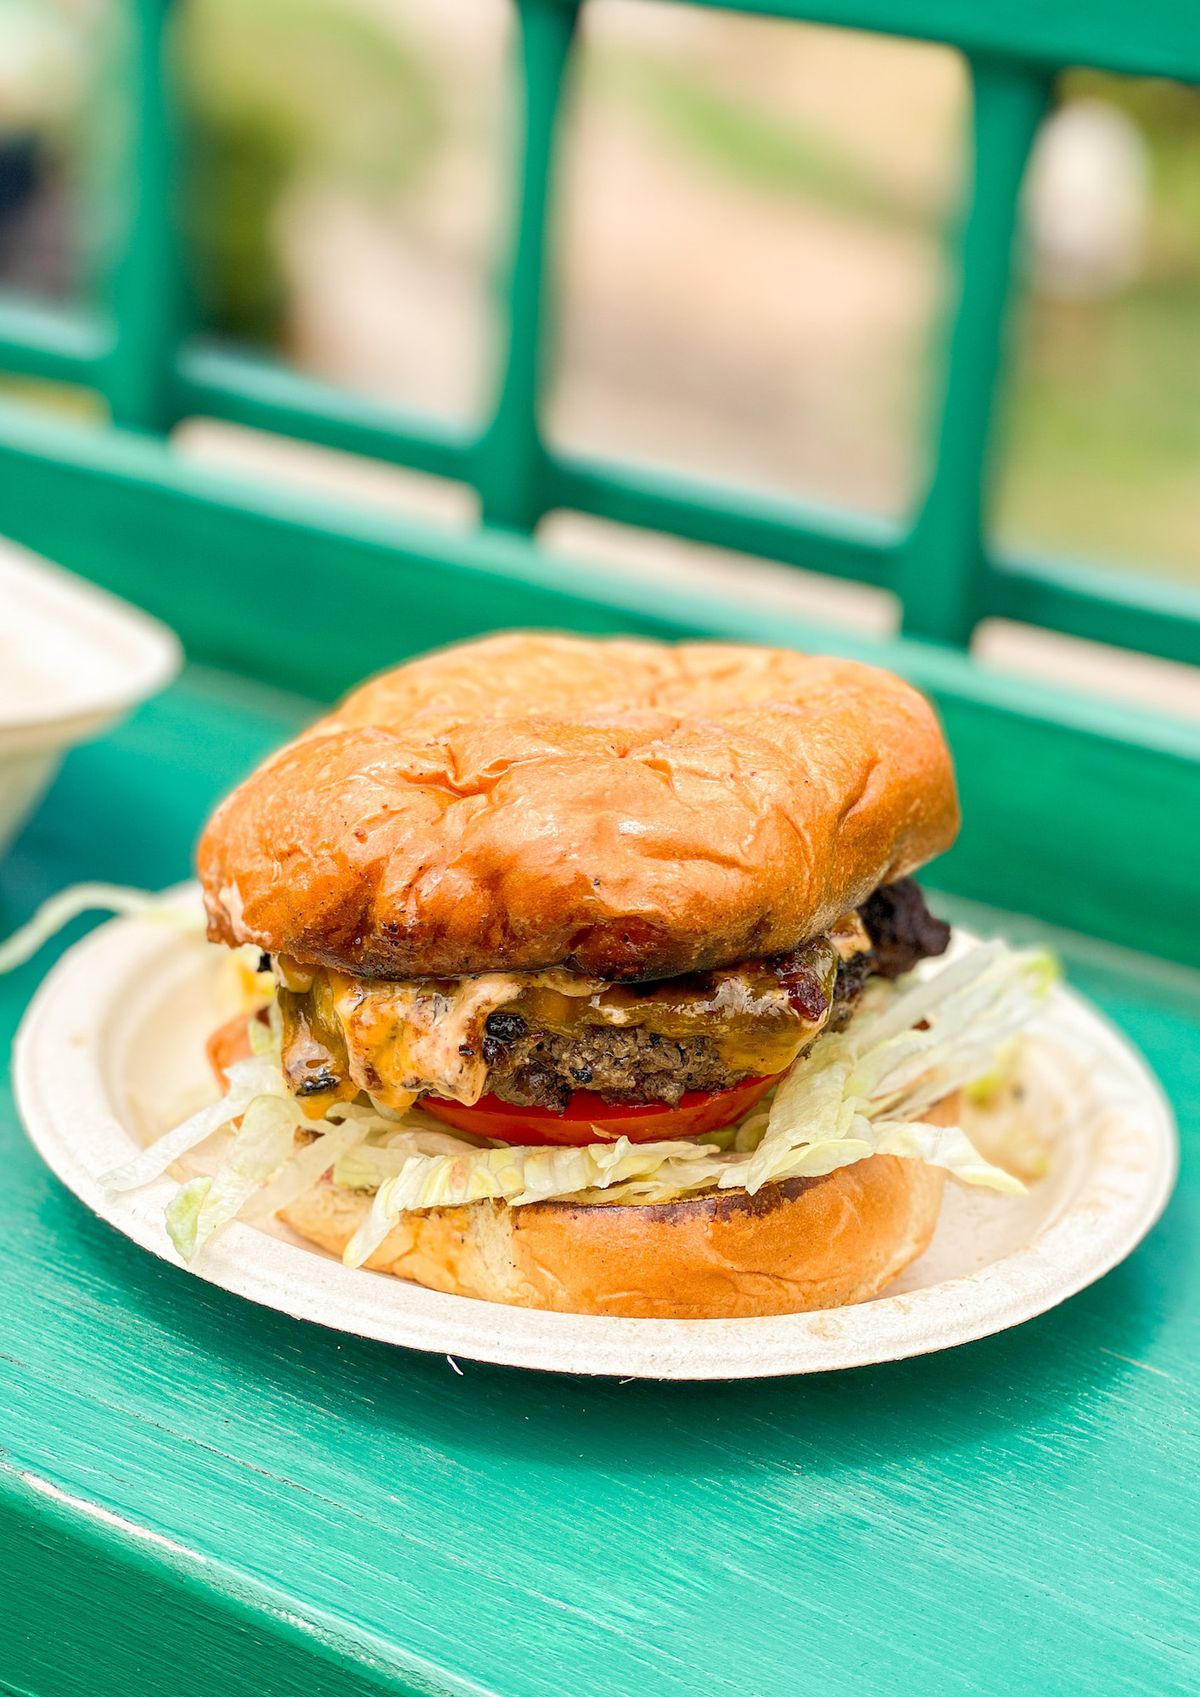 Un hamburger de style arrière-cour avec des bords sombres et des légumes sur un petit pain bronzé, montré de près.